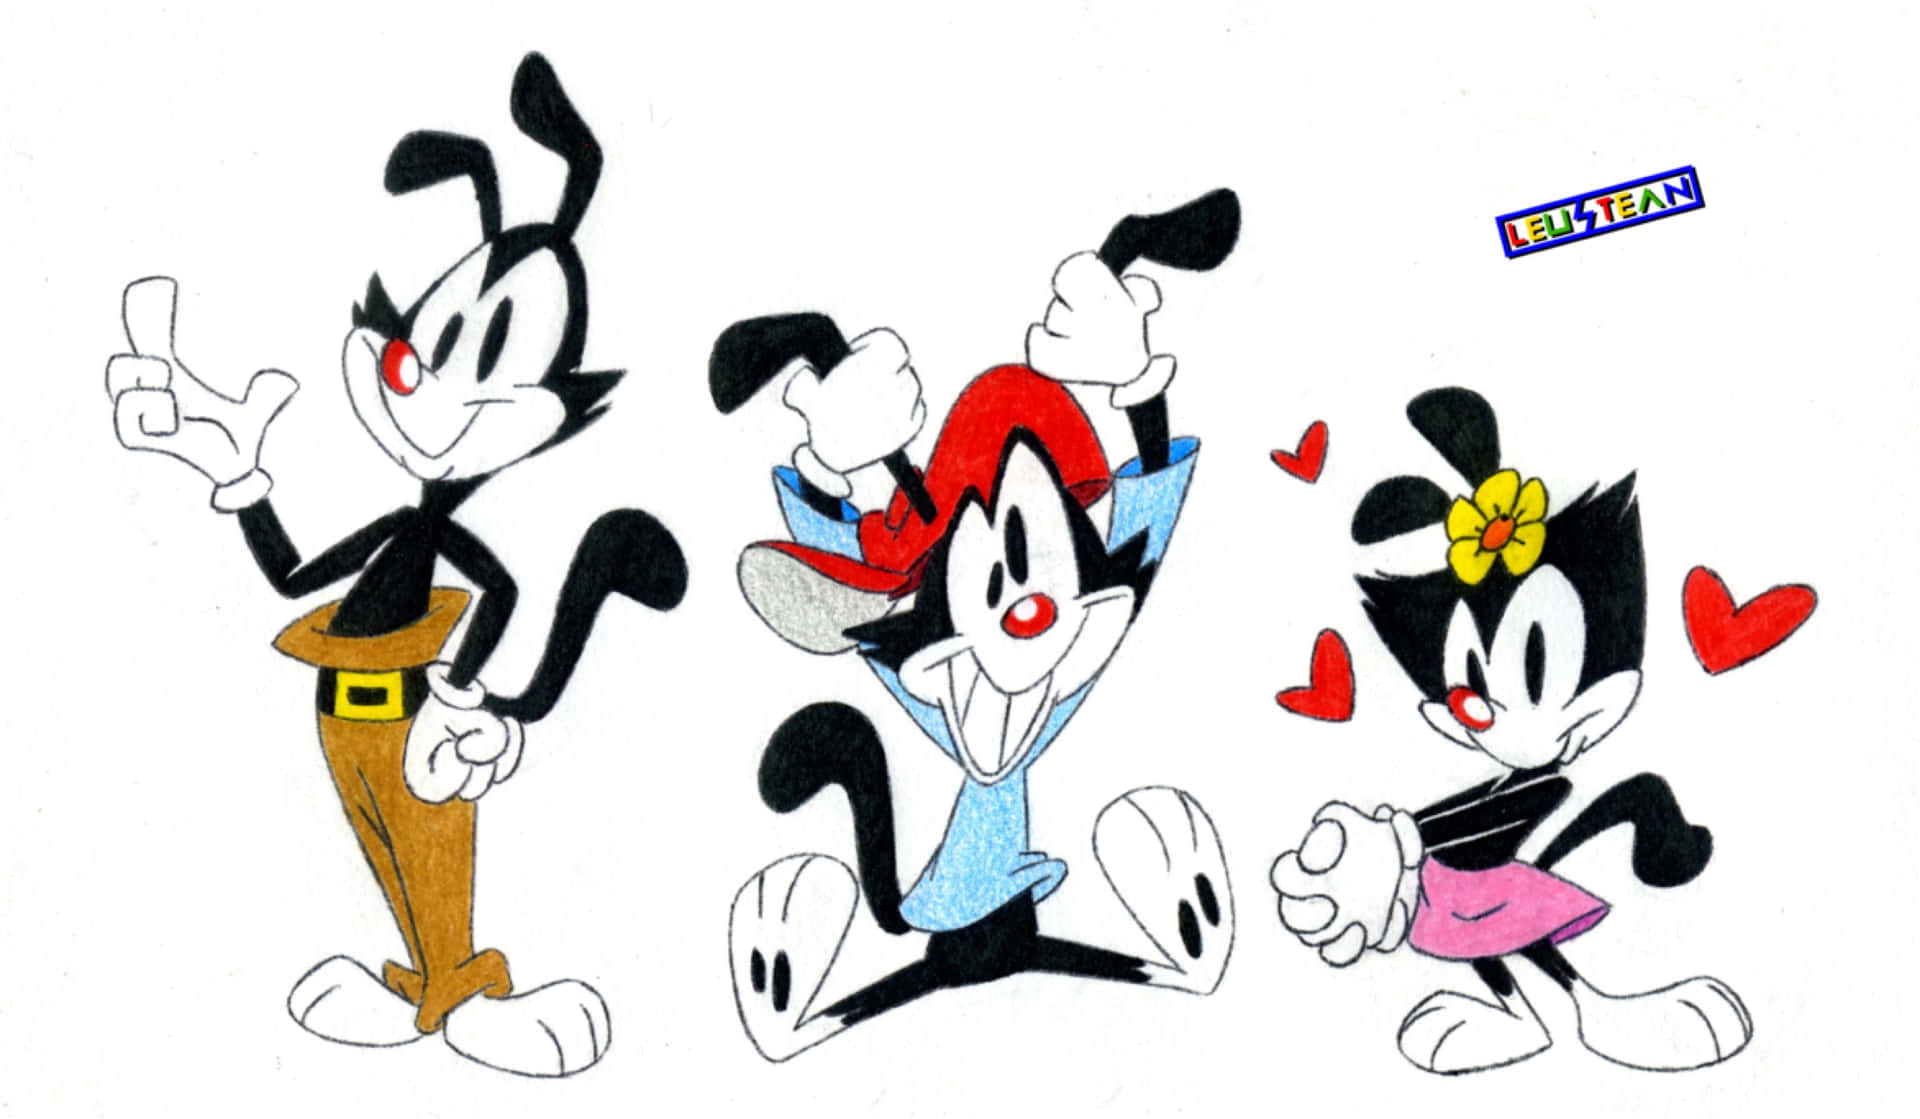 Personajesde Dibujos Animados De Looney Tunes Con Corazones En Sus Caras.